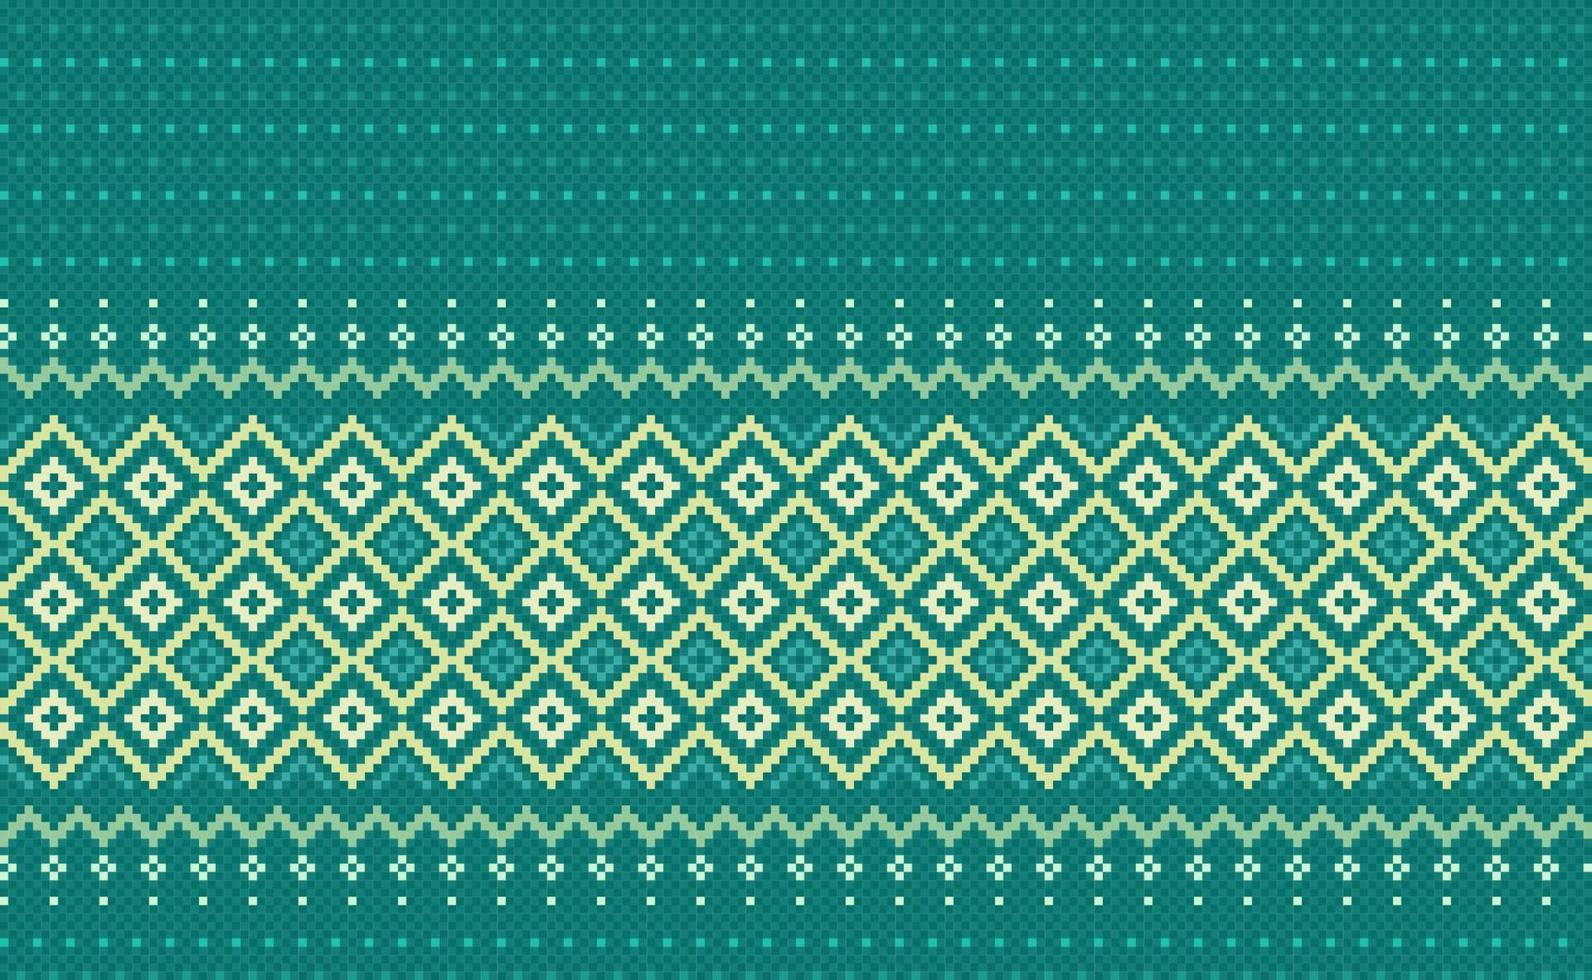 bordado étnico patrón, verde modelo geométrico nórdico fondo, cruzar puntada nativo azteca estilo vector